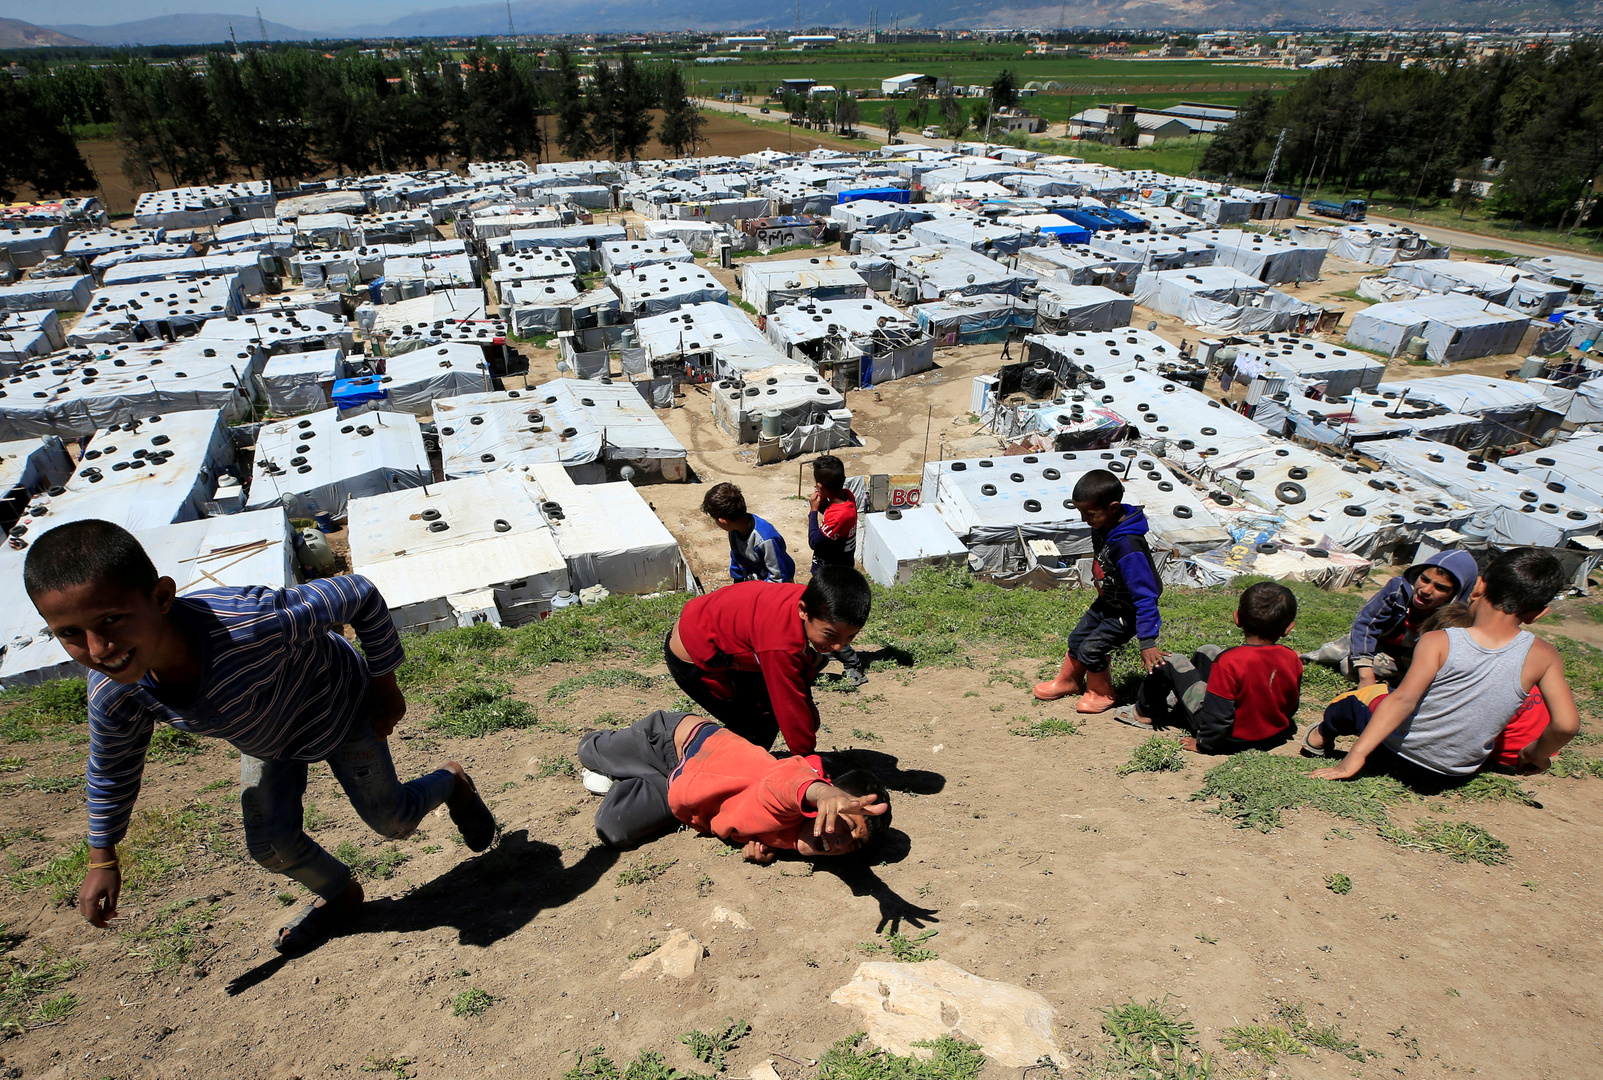 سوريا: بعض الدول الغربية تتعامل مع ملف اللاجئين بطريقة 